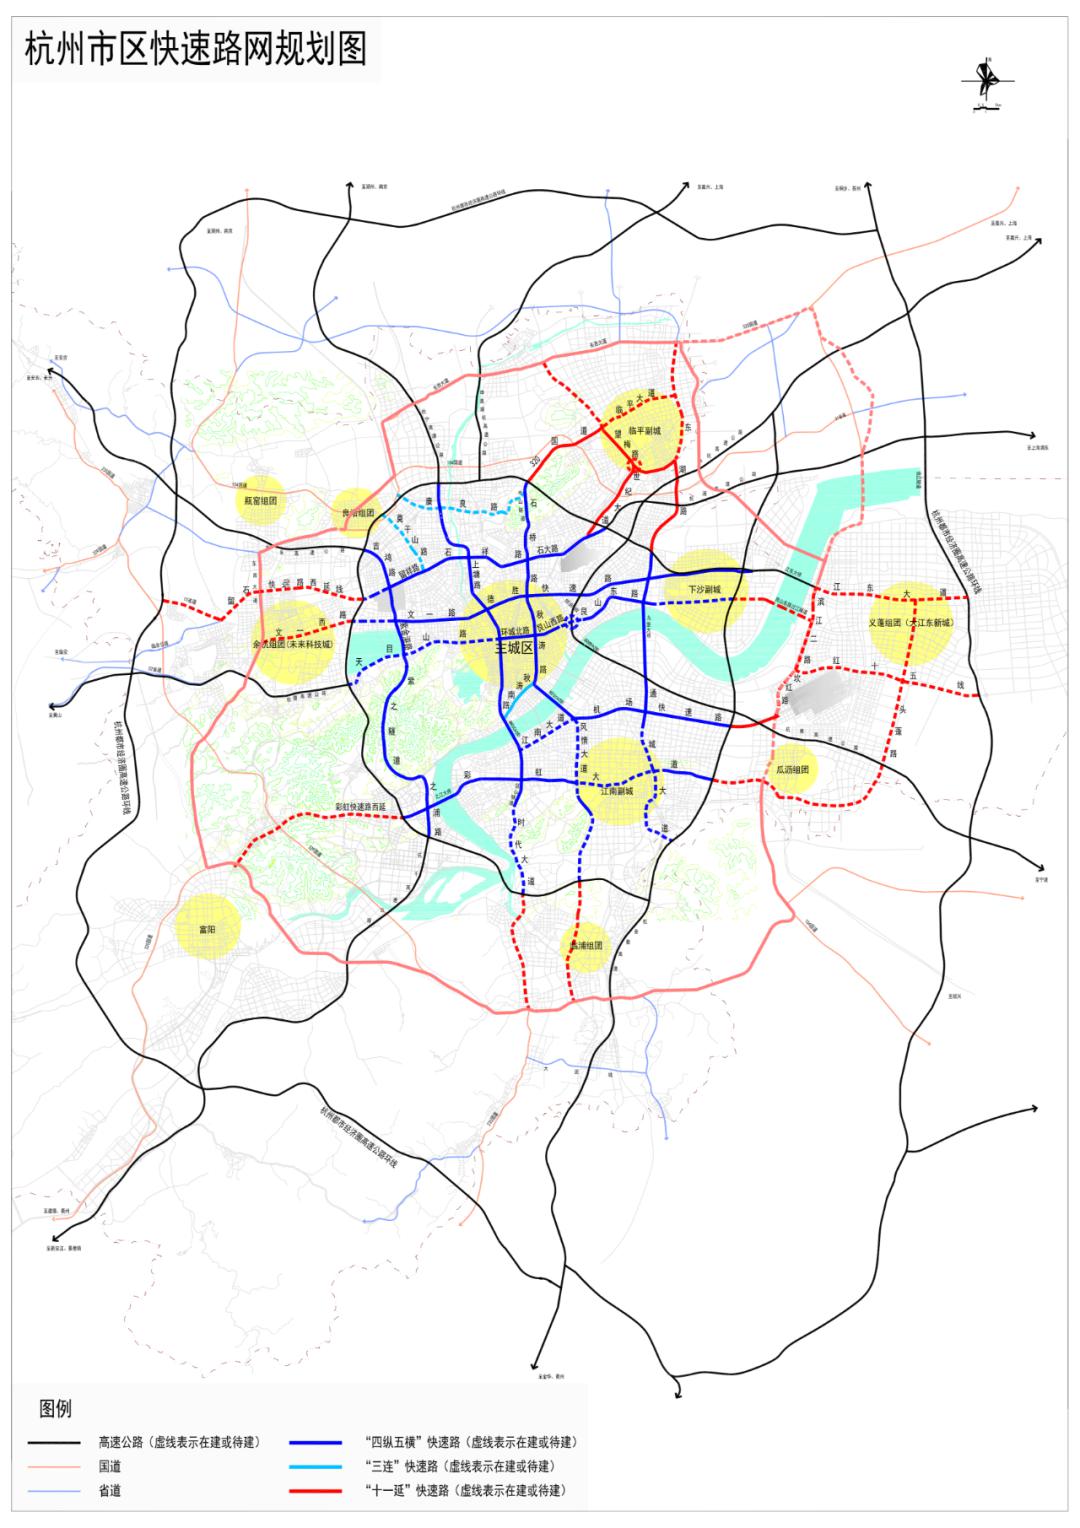 328个项目,年计划投资超260亿元!今年杭州城市道路建设计划正式发布!